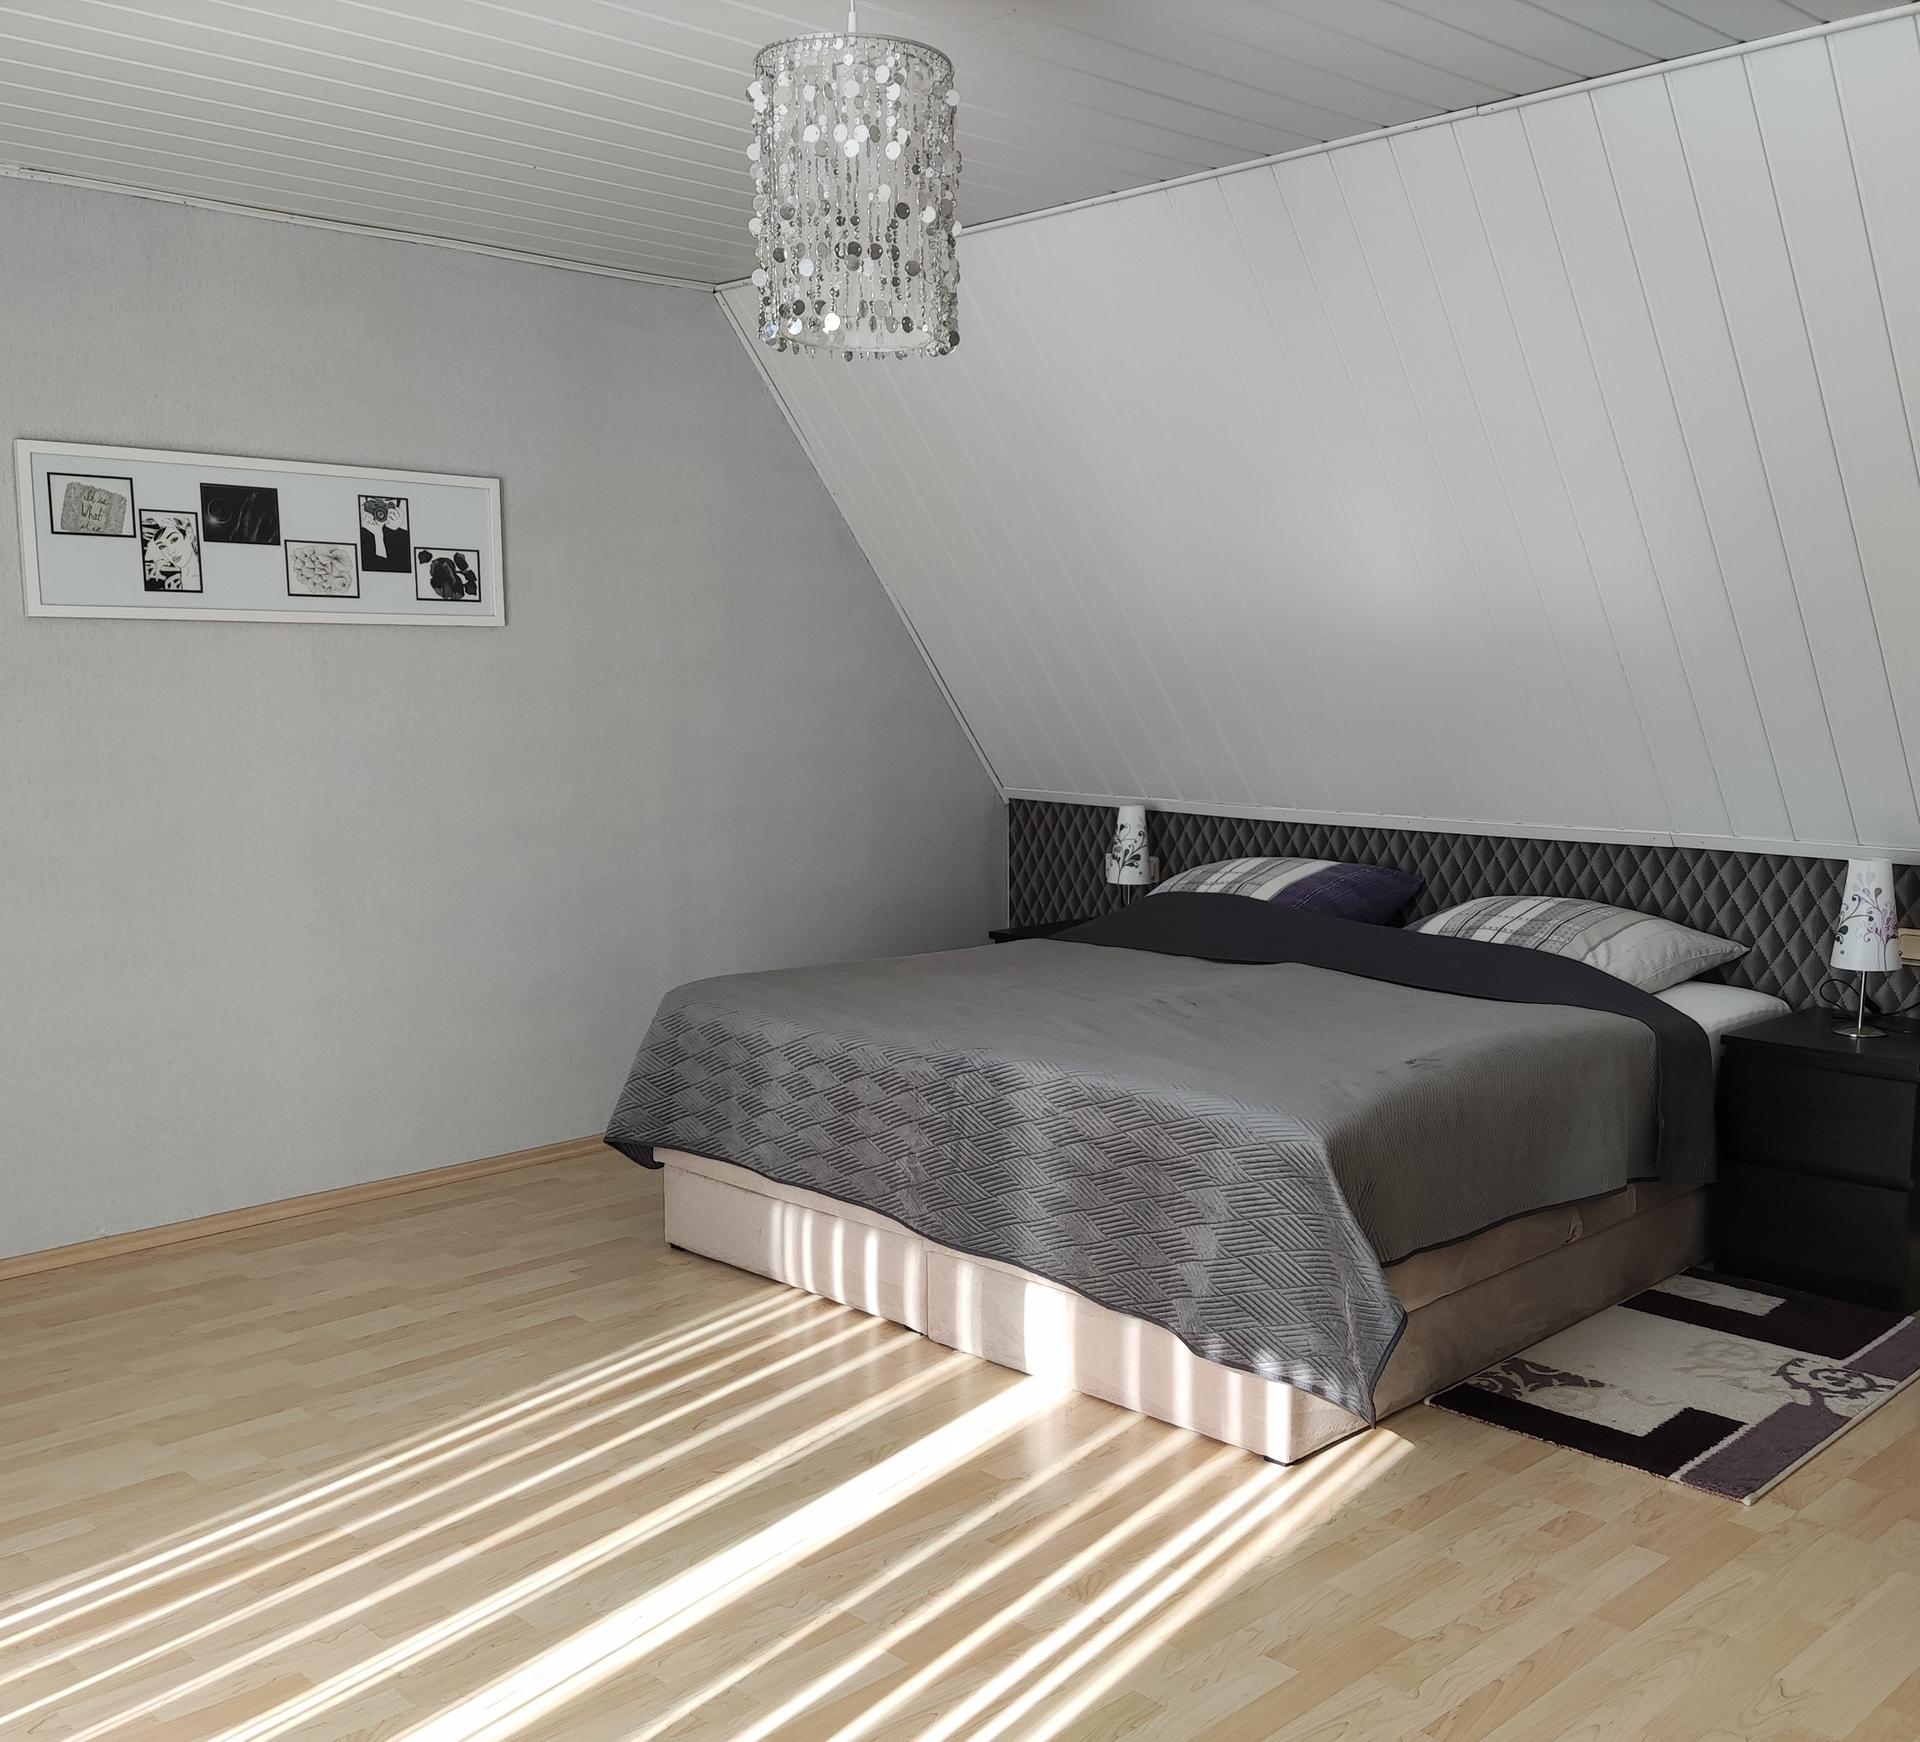 Foto vom Schlafzimmer. Dachsschräge und darunter ein dunkelgraues Doppelbett mit hellgrauer Bettwäsche. Der Boden besteht aus hellem Eichenholz